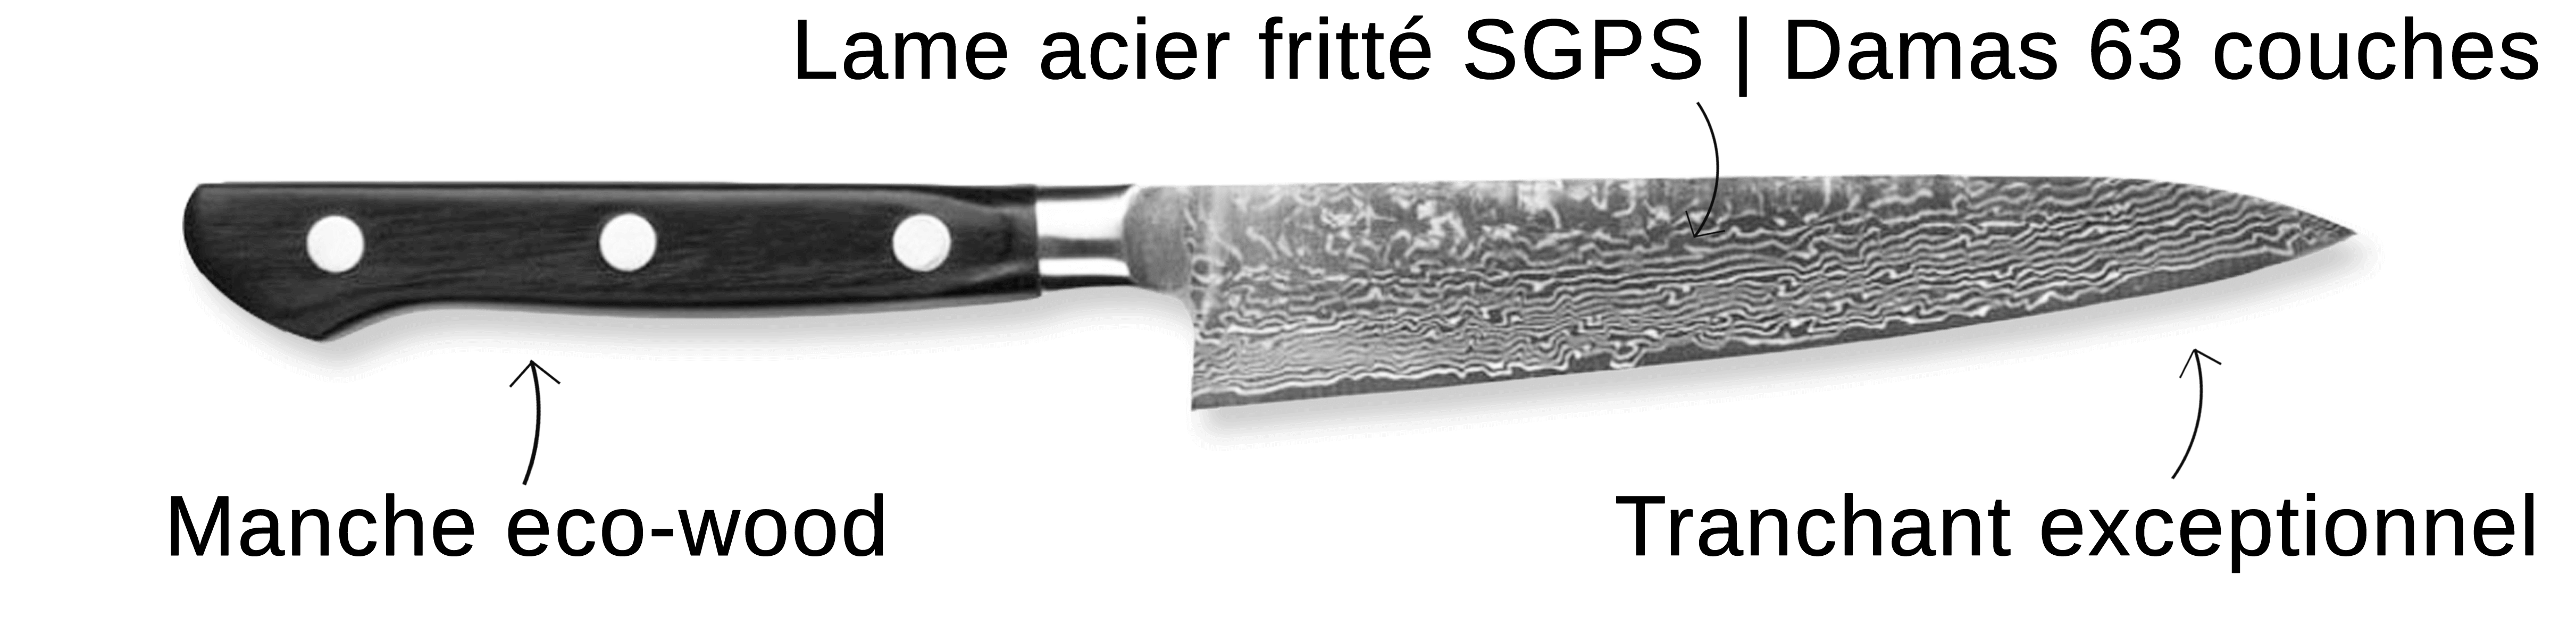 Découvrez le couteau Tojiro Damascus Pro SGPS ici